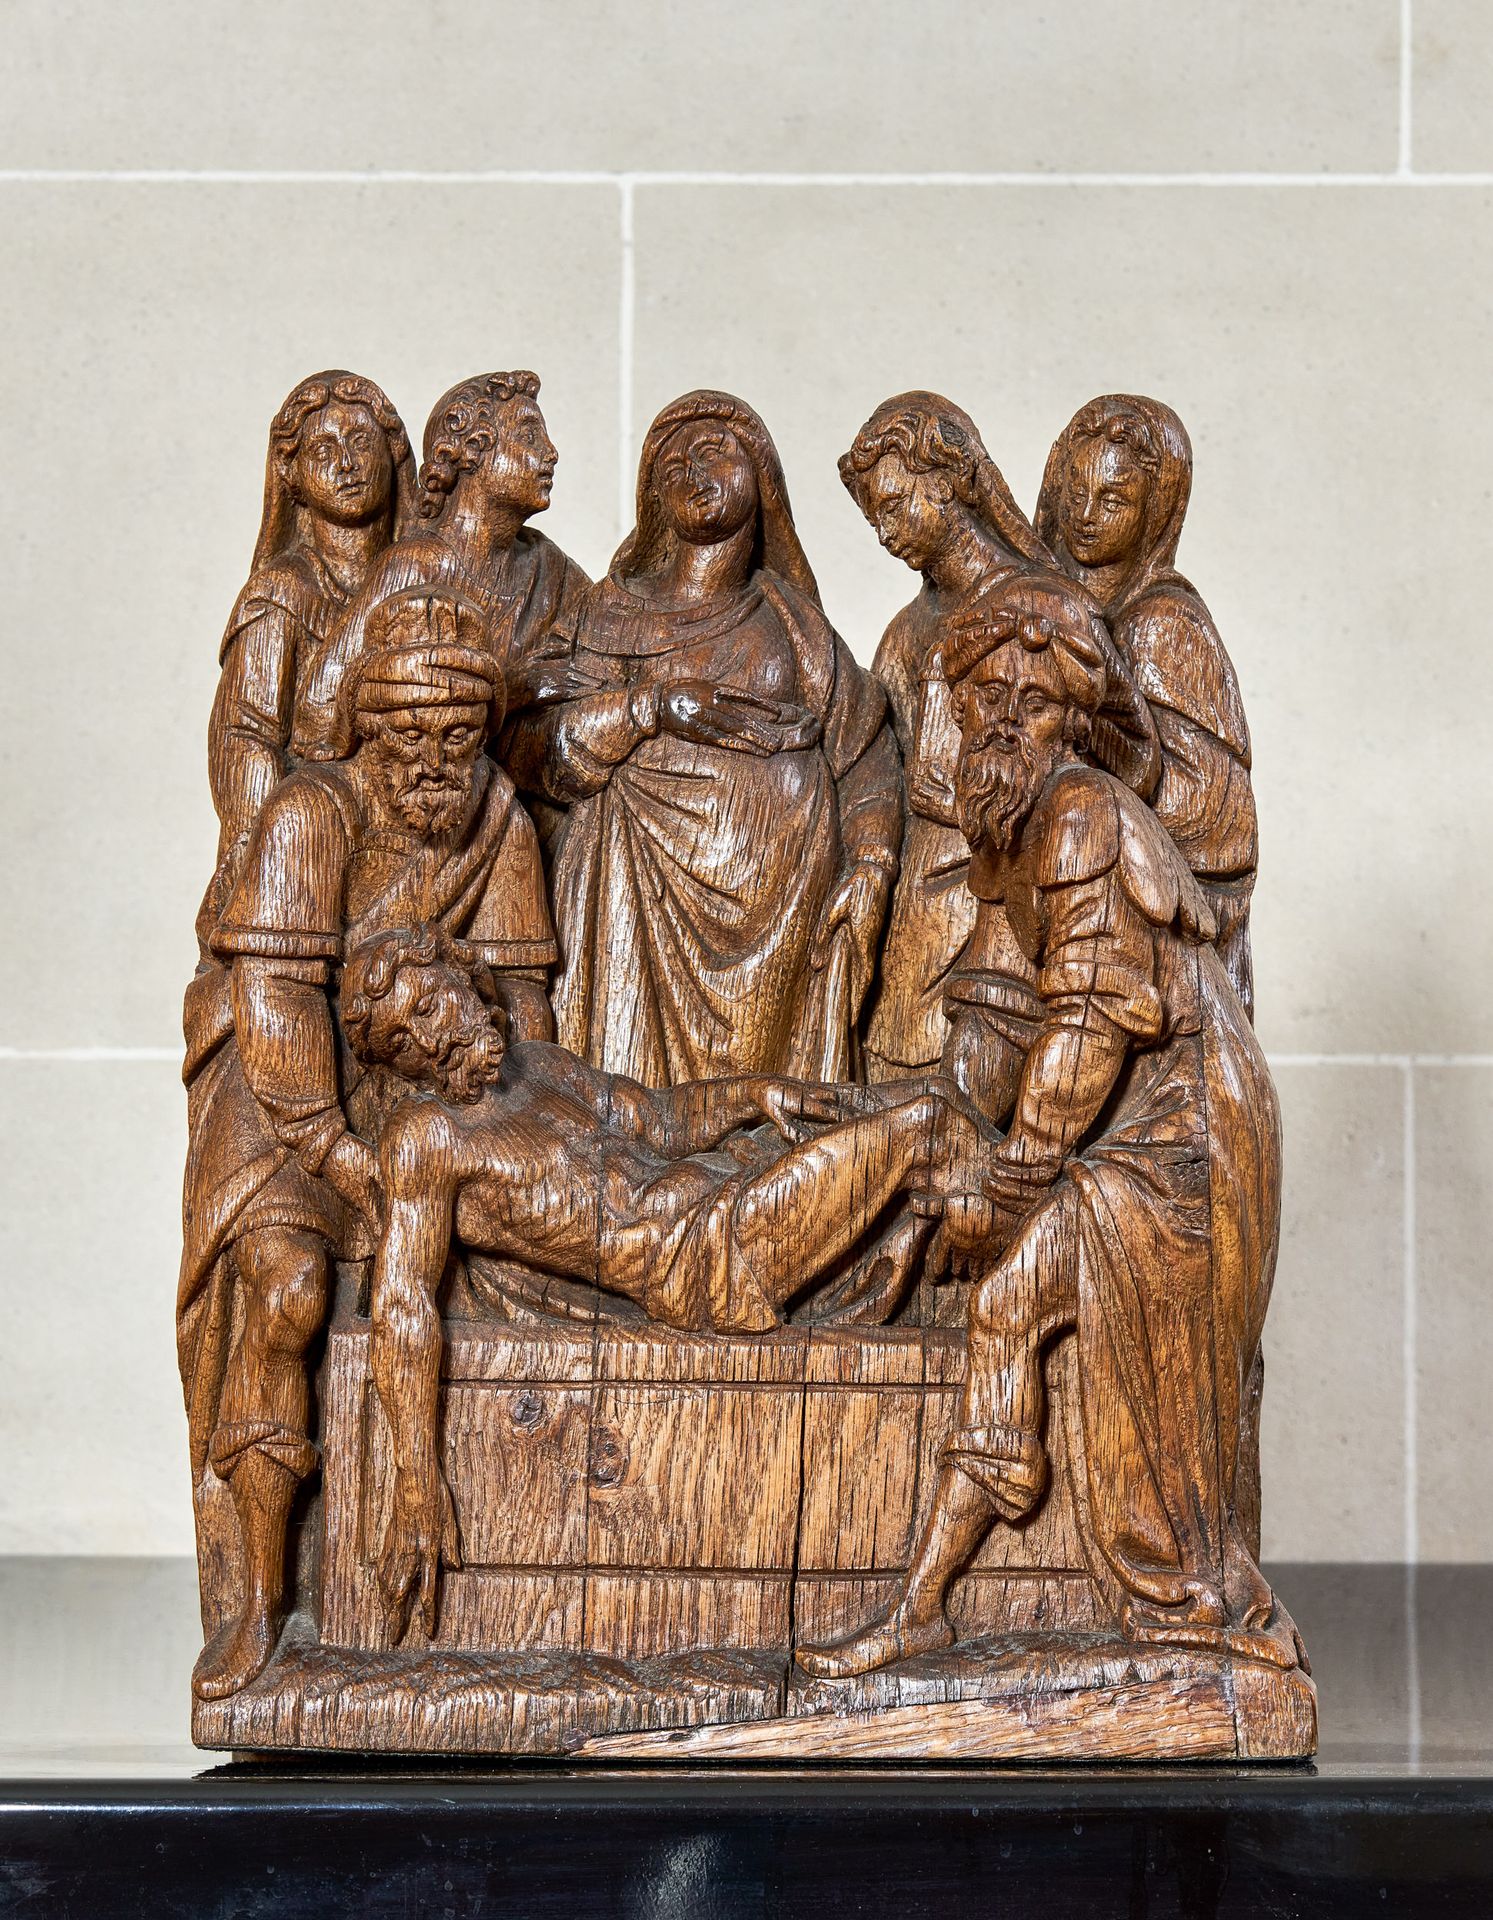 Null 描绘墓葬的橡木雕花祭坛部件

法国北部或法兰德斯，16世纪

基督由尼哥底母和亚利马太的约瑟支撑着

高：42厘米 x 宽：36厘米